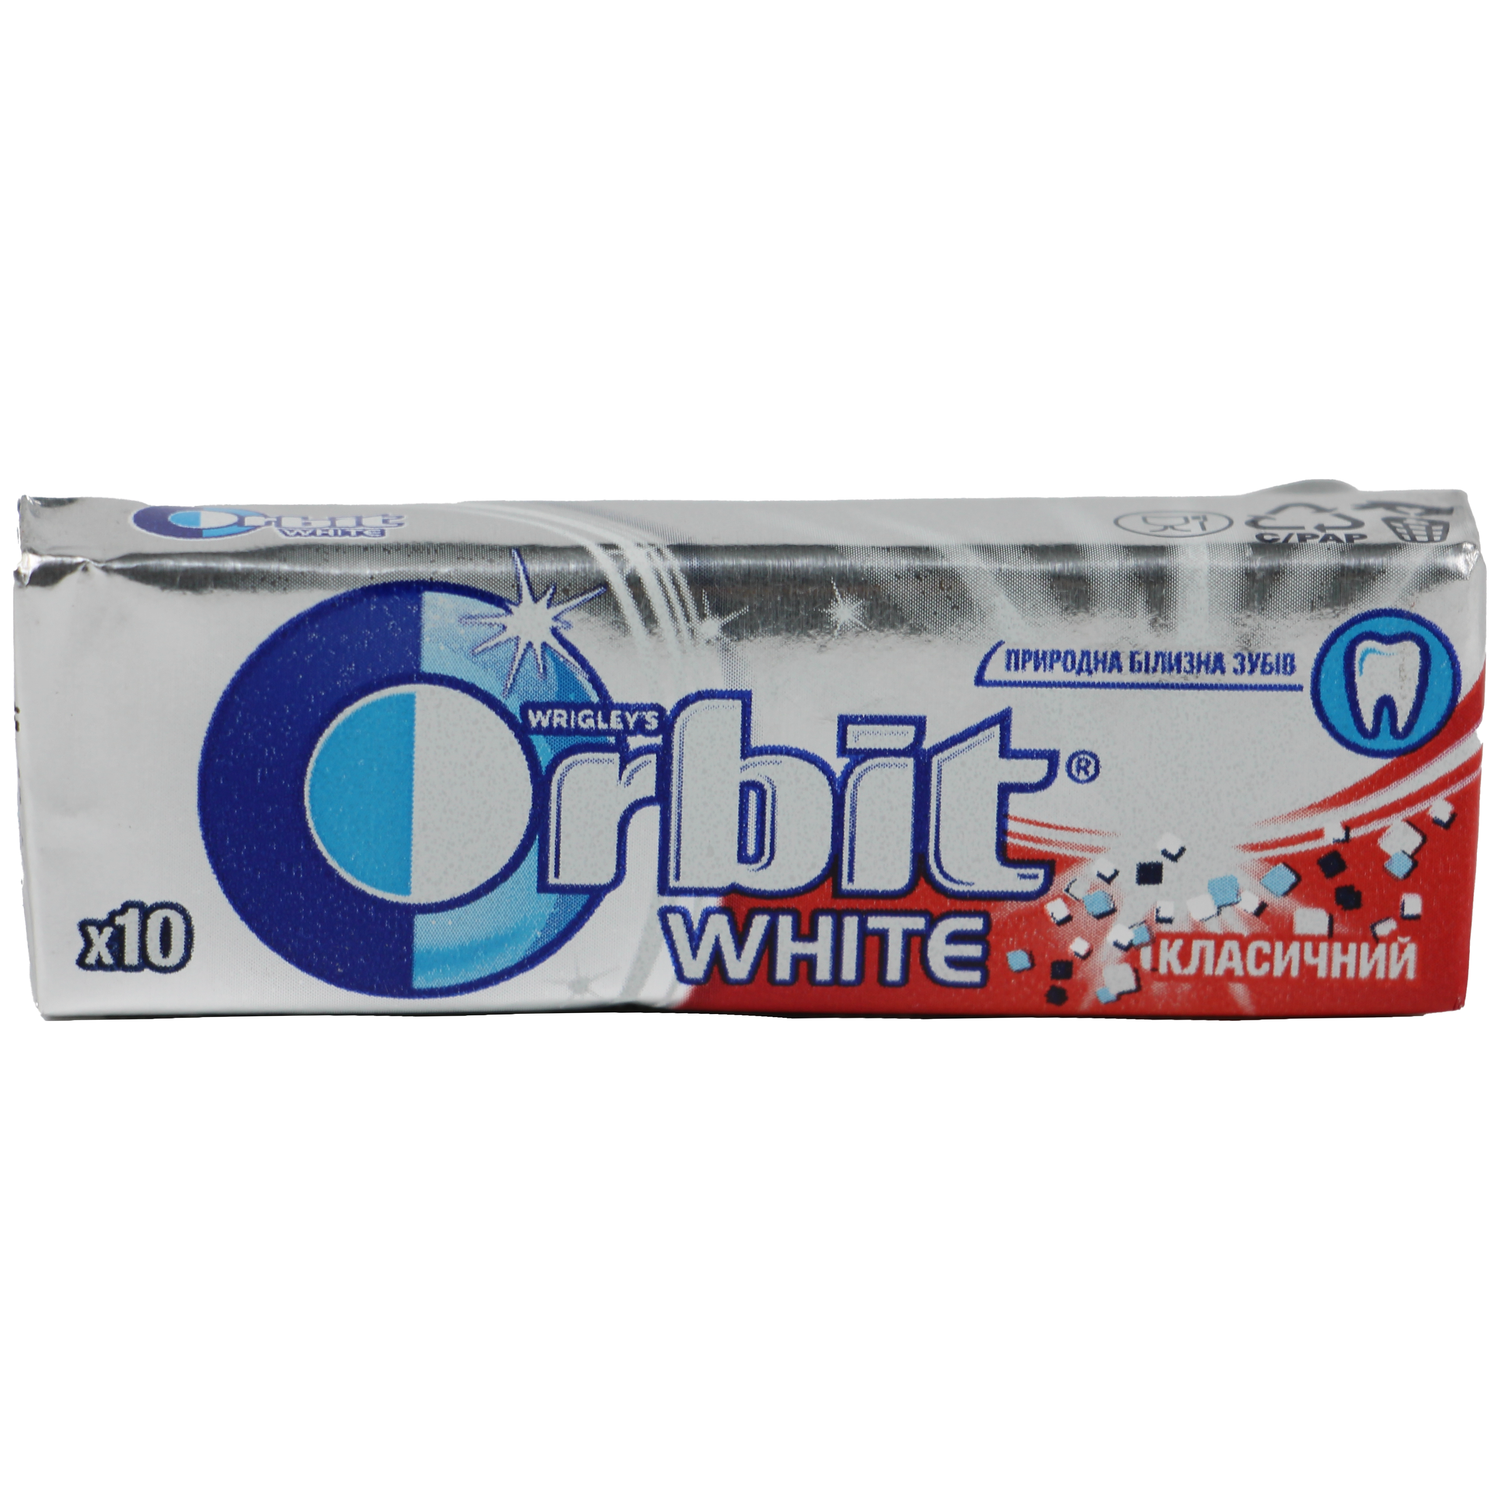 Жевательная резинка Orbit White Классический с мятным вкусом 14г